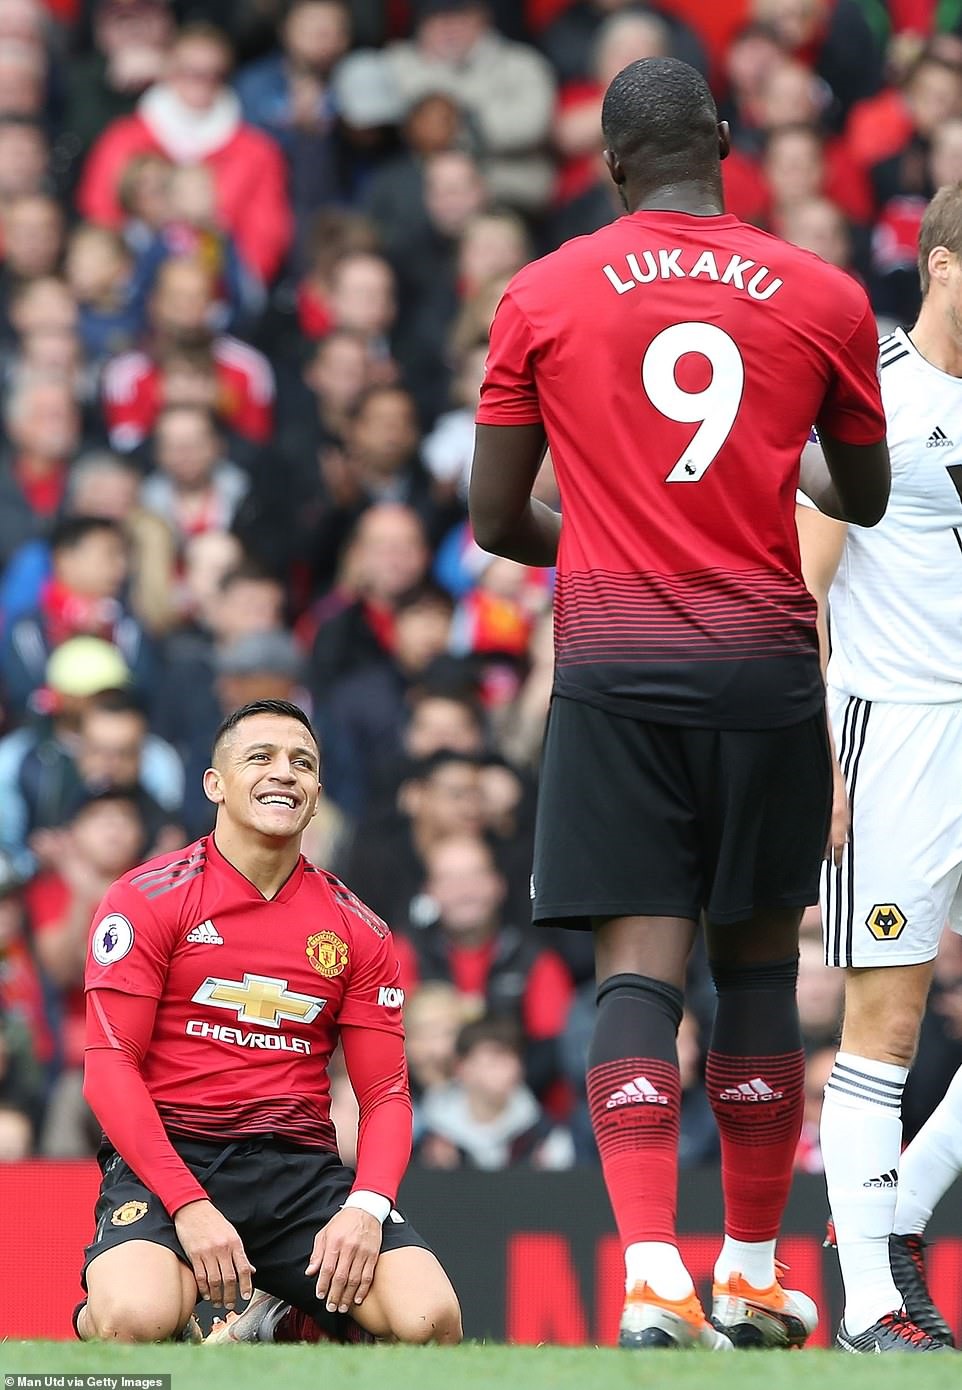 Alexis Sanchez (trái) lẫn Lukaku đều không đạt được phong độ cao nhất ở trận này. Ảnh: Getty Images.